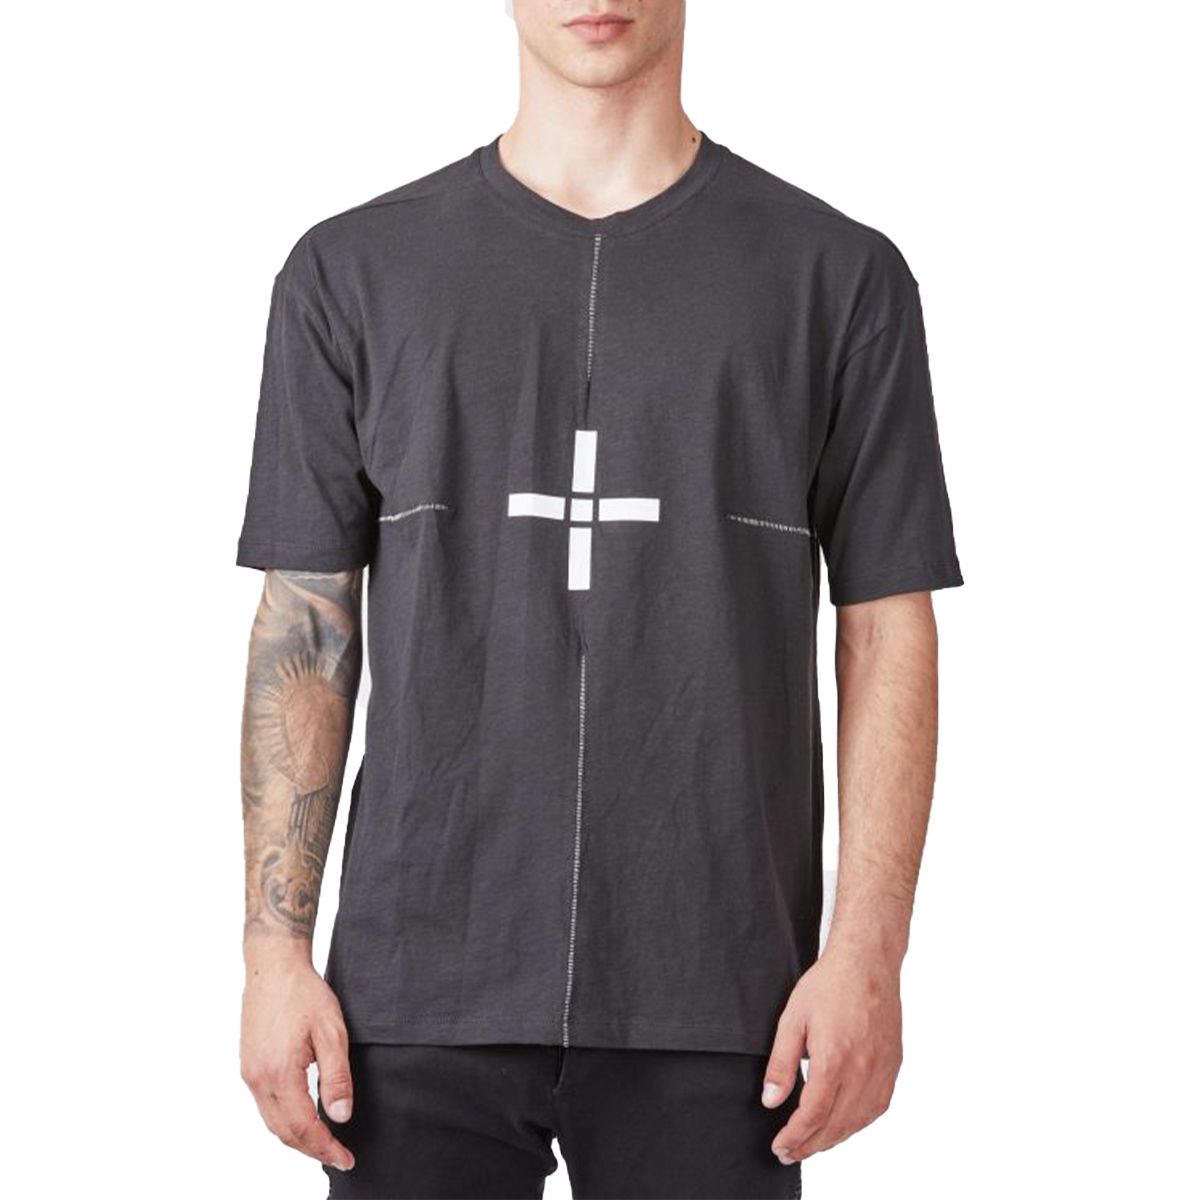 Cross Design T-Shirt